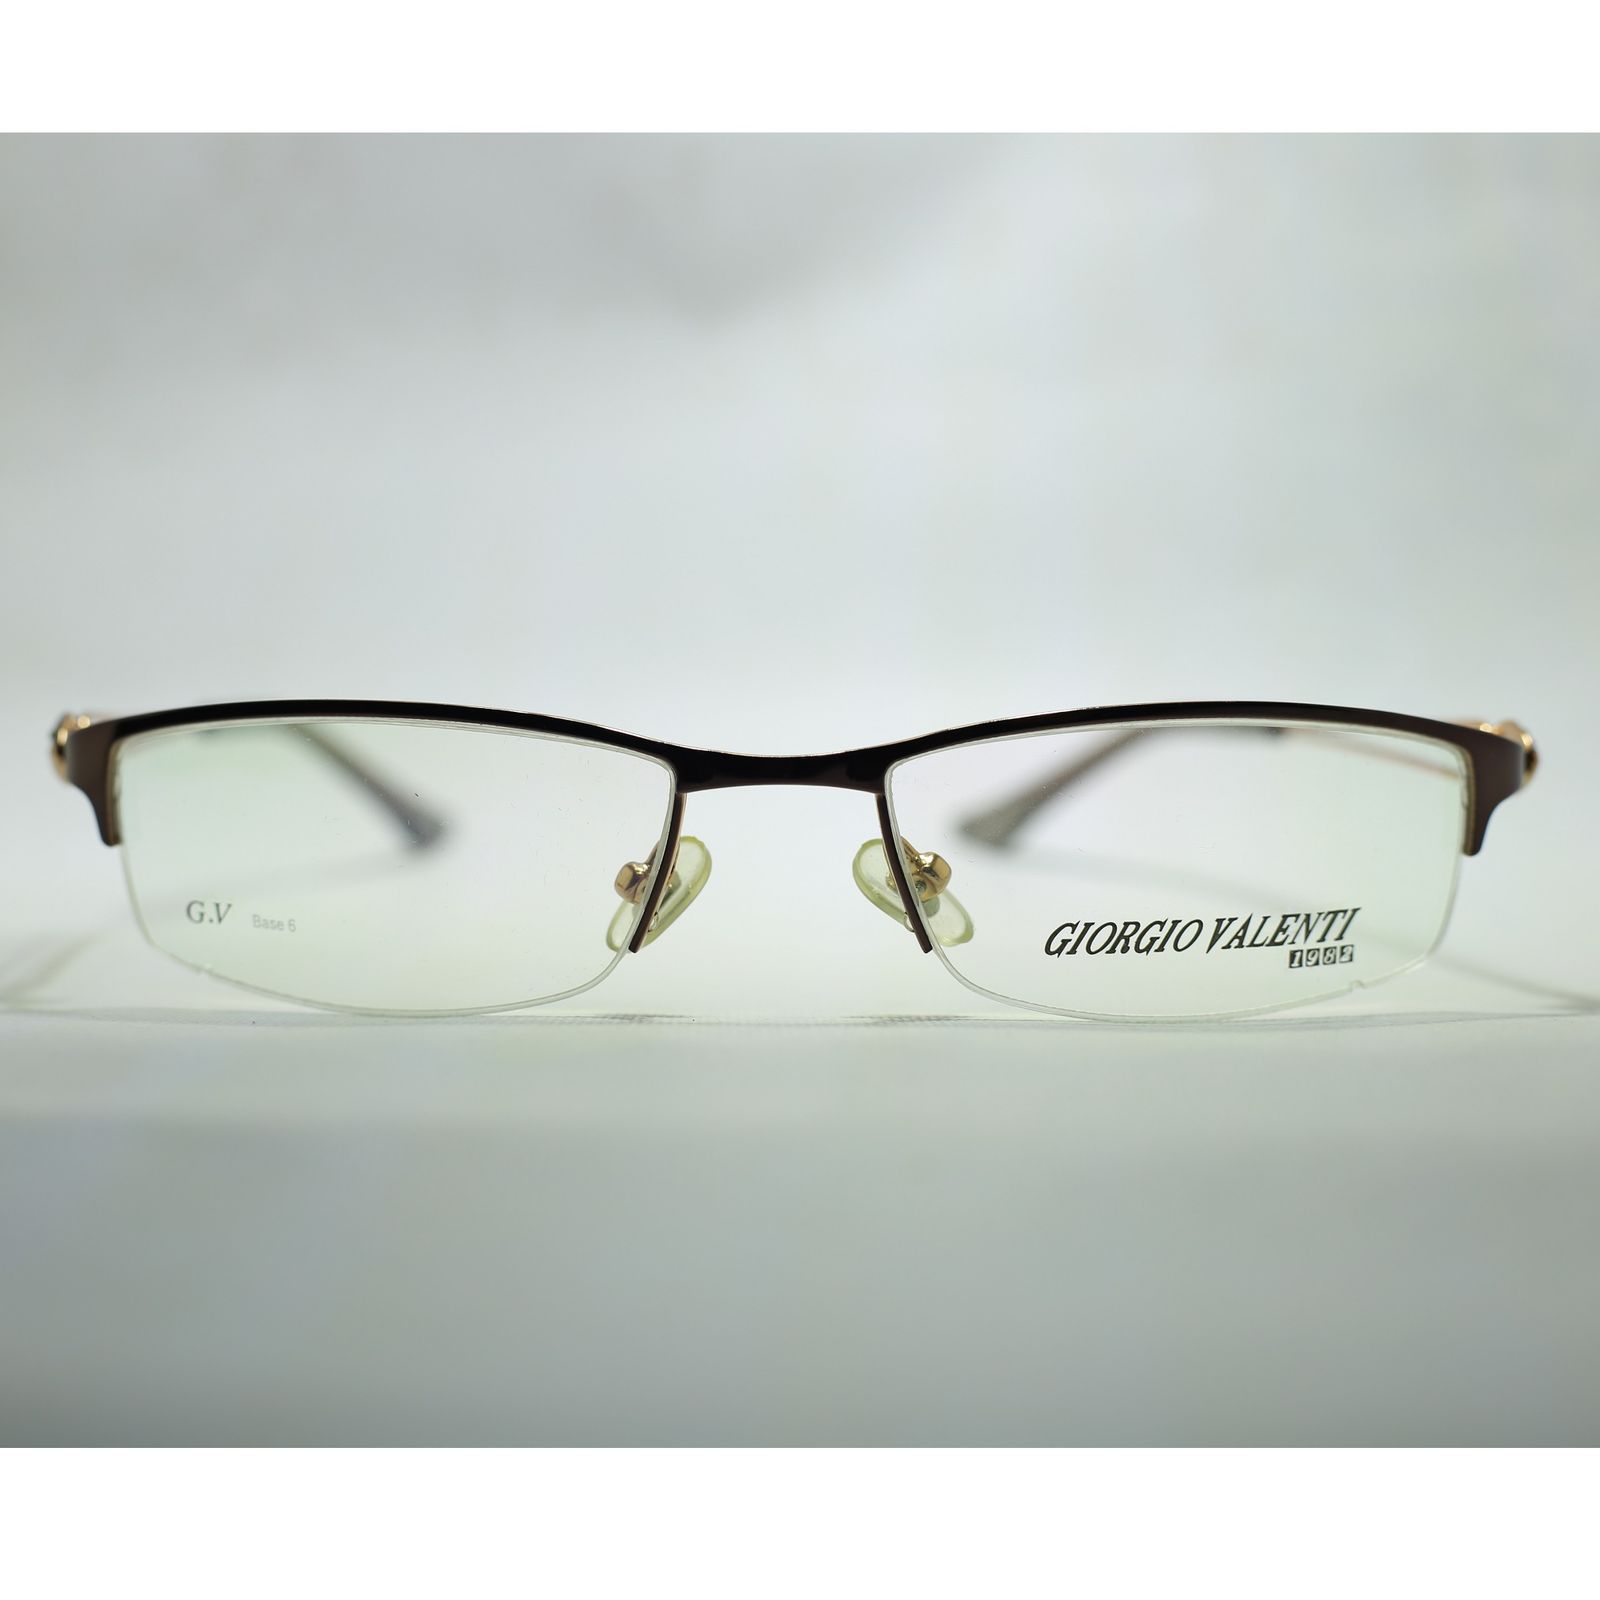 فریم عینک طبی جورجیو ولنتی مدل 1085 -  - 4